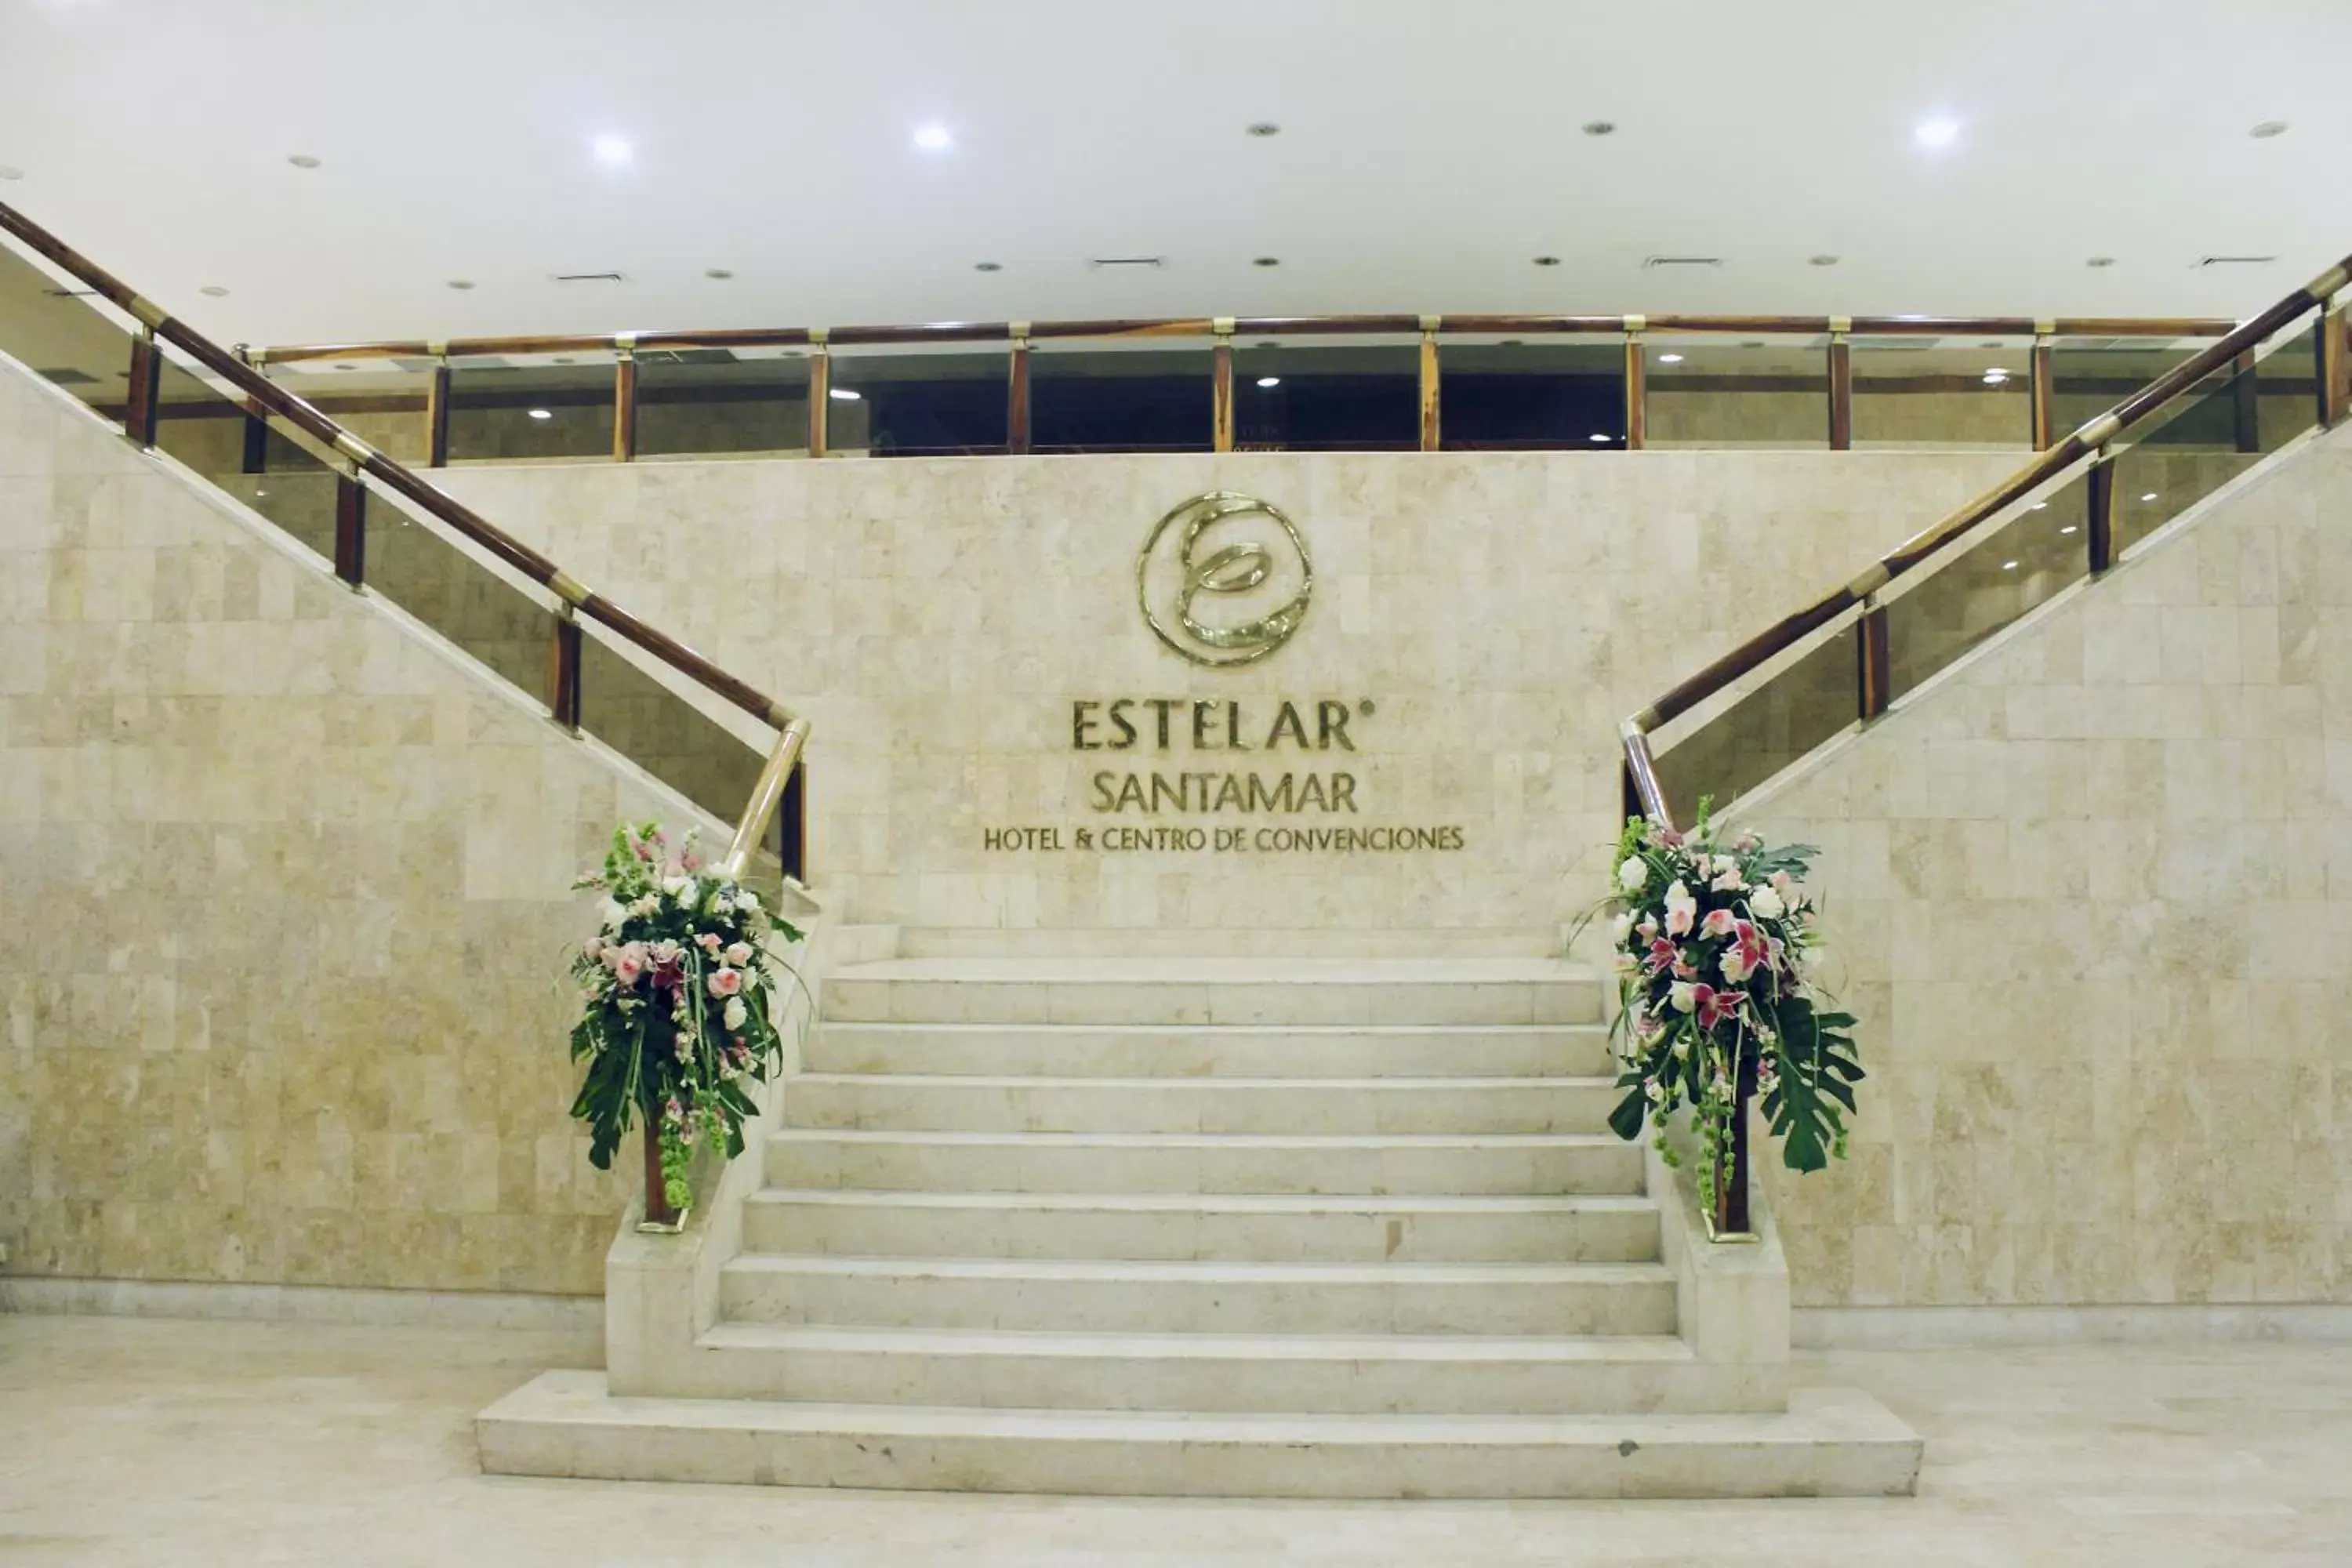 Lobby or reception in Estelar Santamar Hotel & Centro De Convenciones